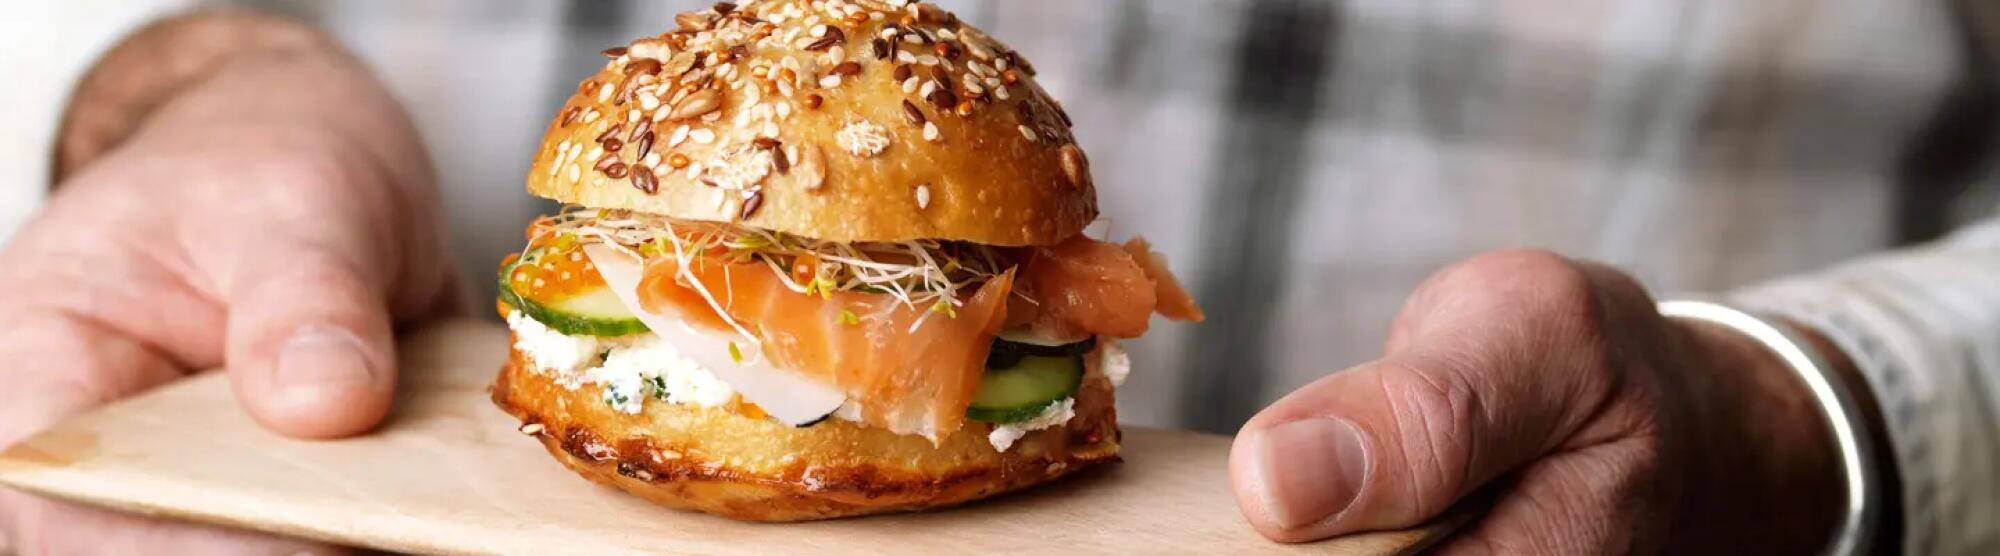 Recette : Mini burger au saumon fumé et fromage frais